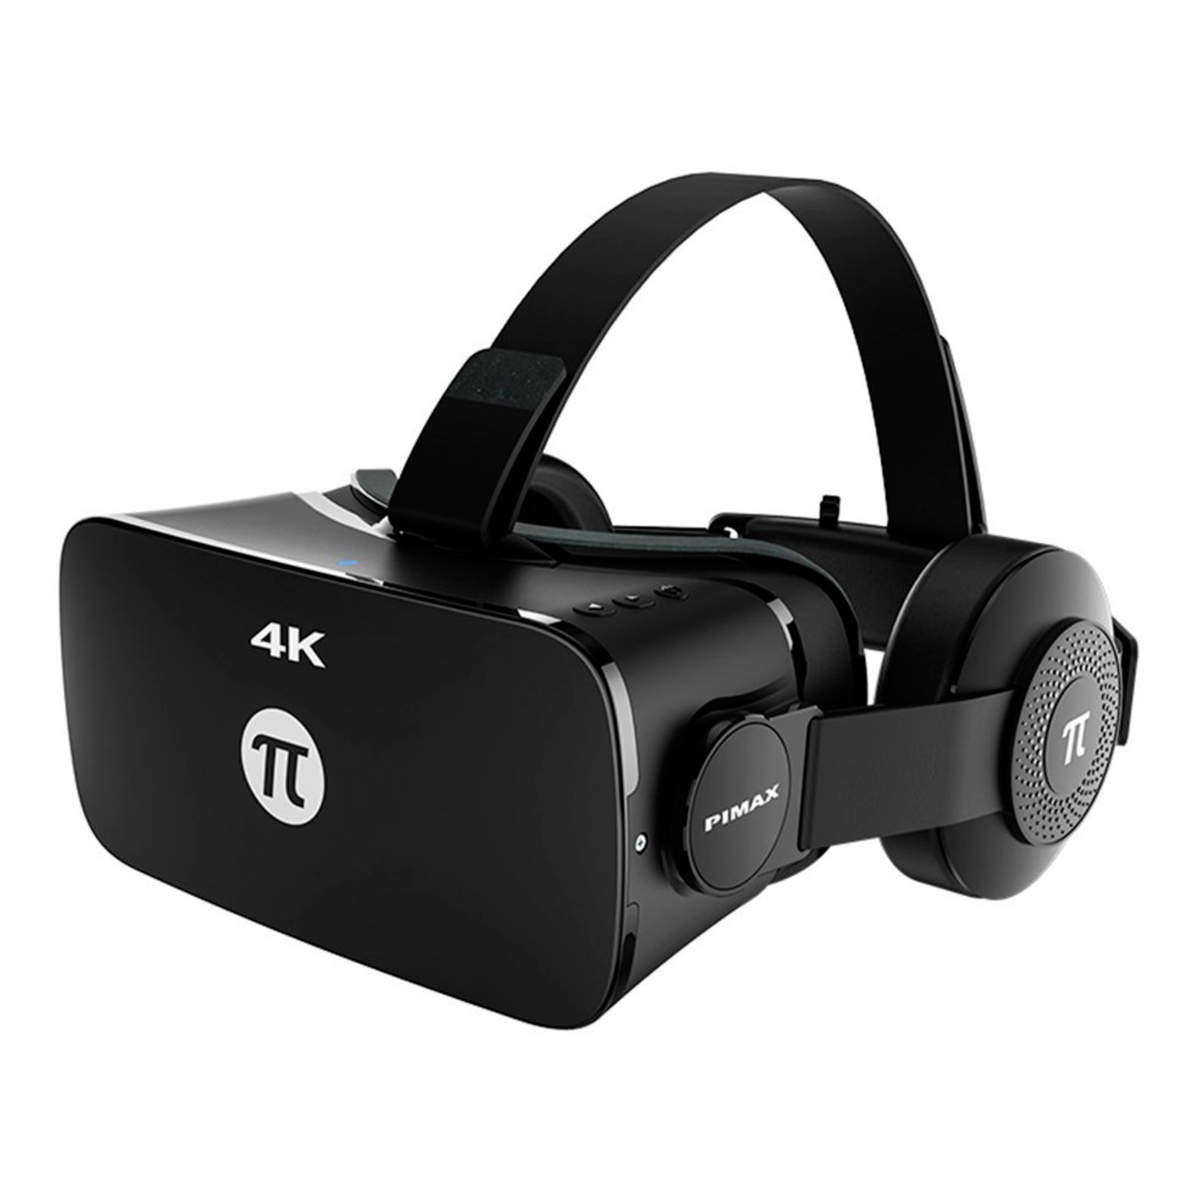 Джойстик vr очков купить. Pimax 4k. Primax 4k VR. 4k VR Headset. Виар очки для ПК.